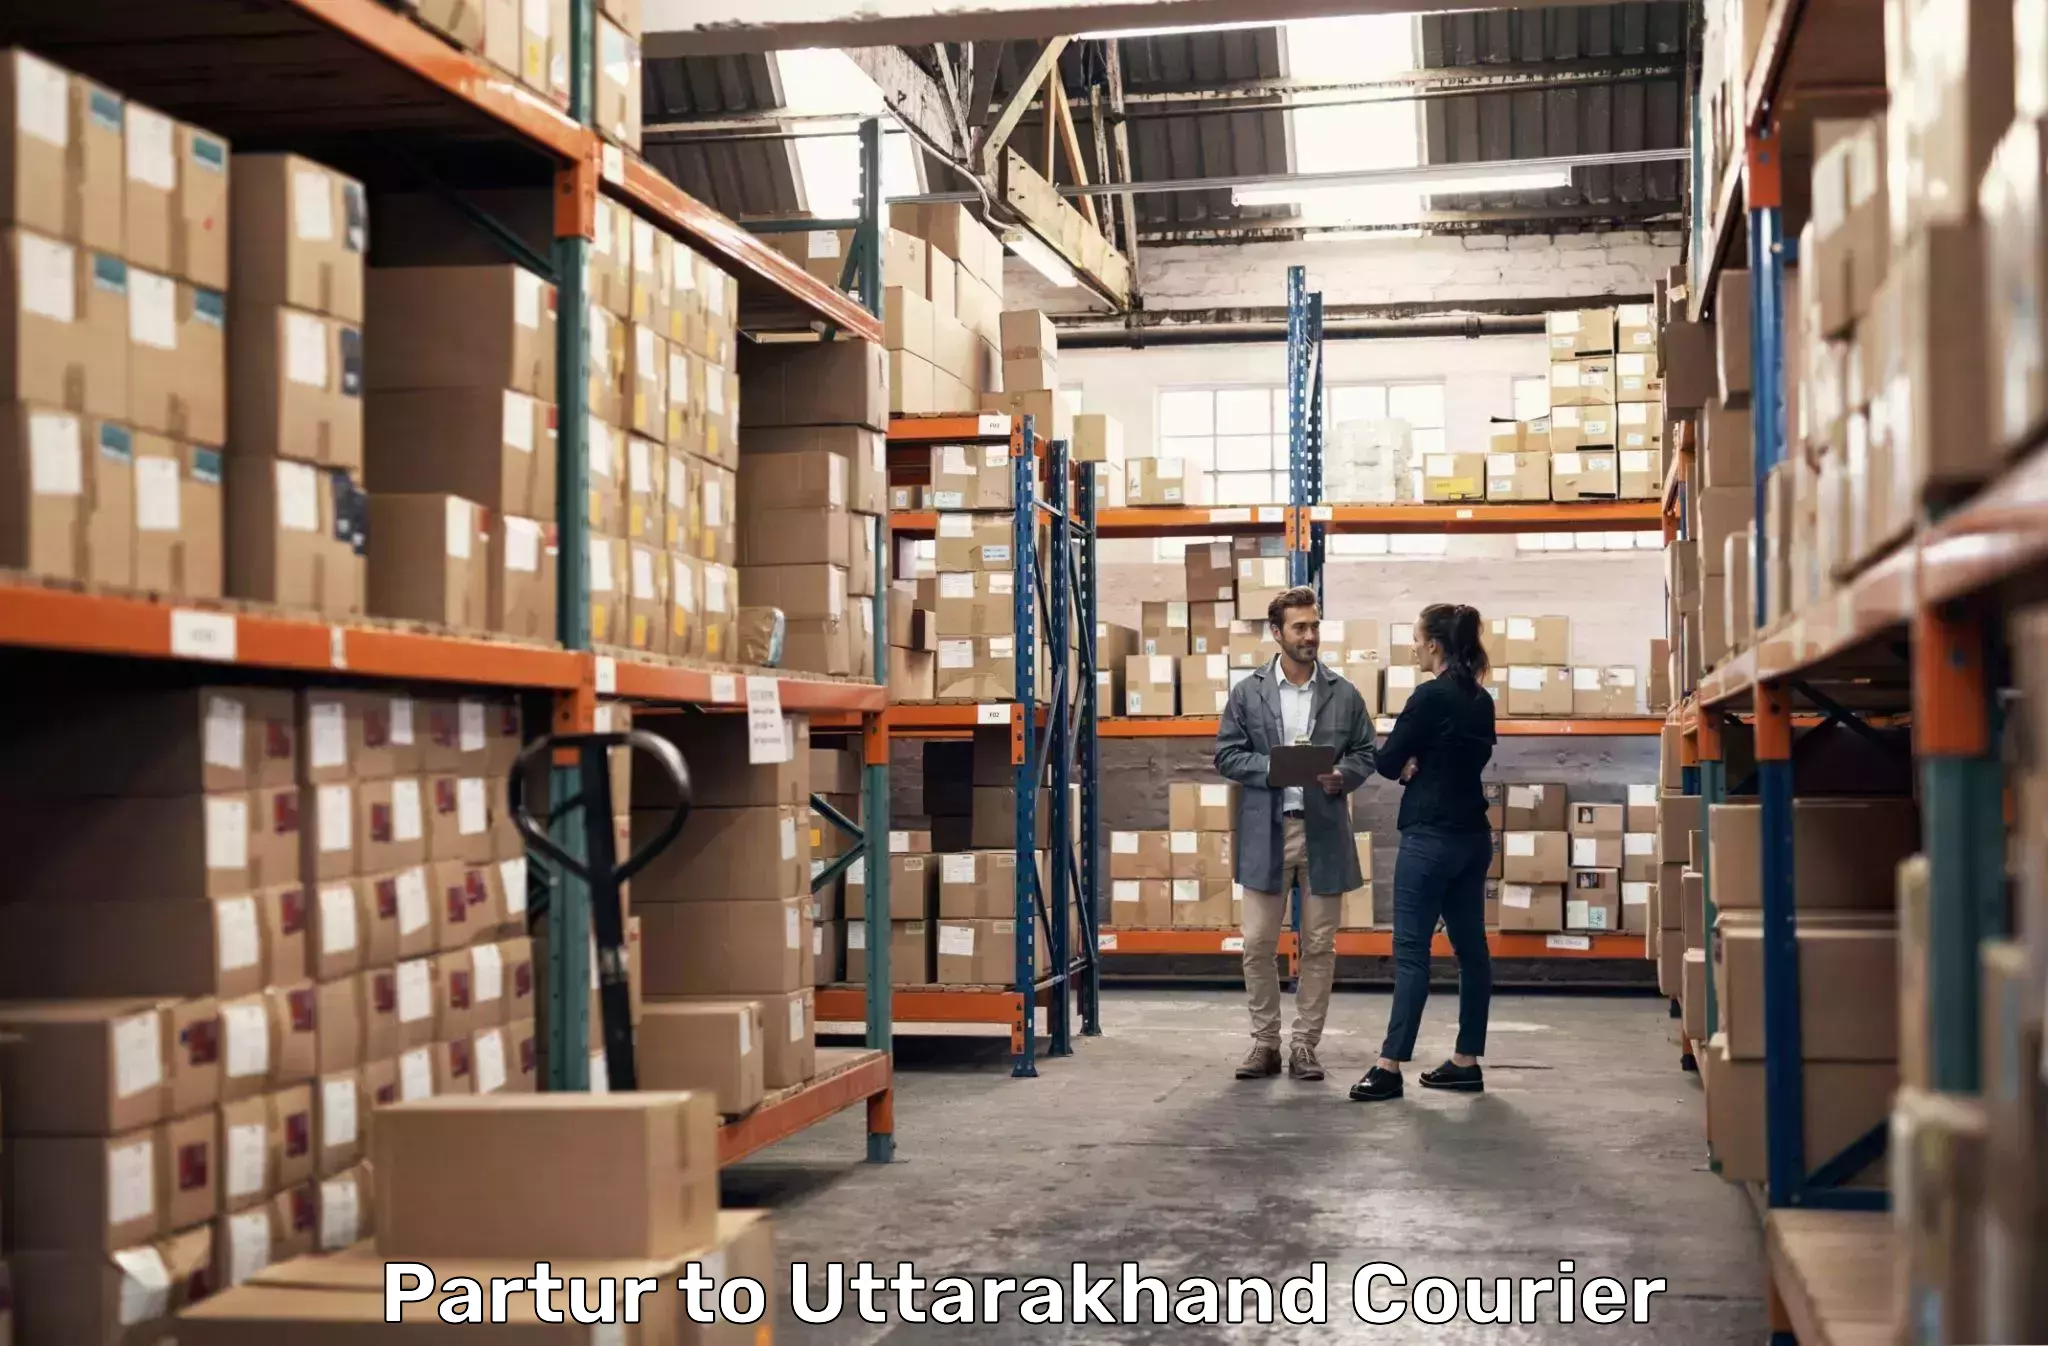 Courier service comparison Partur to Uttarakhand